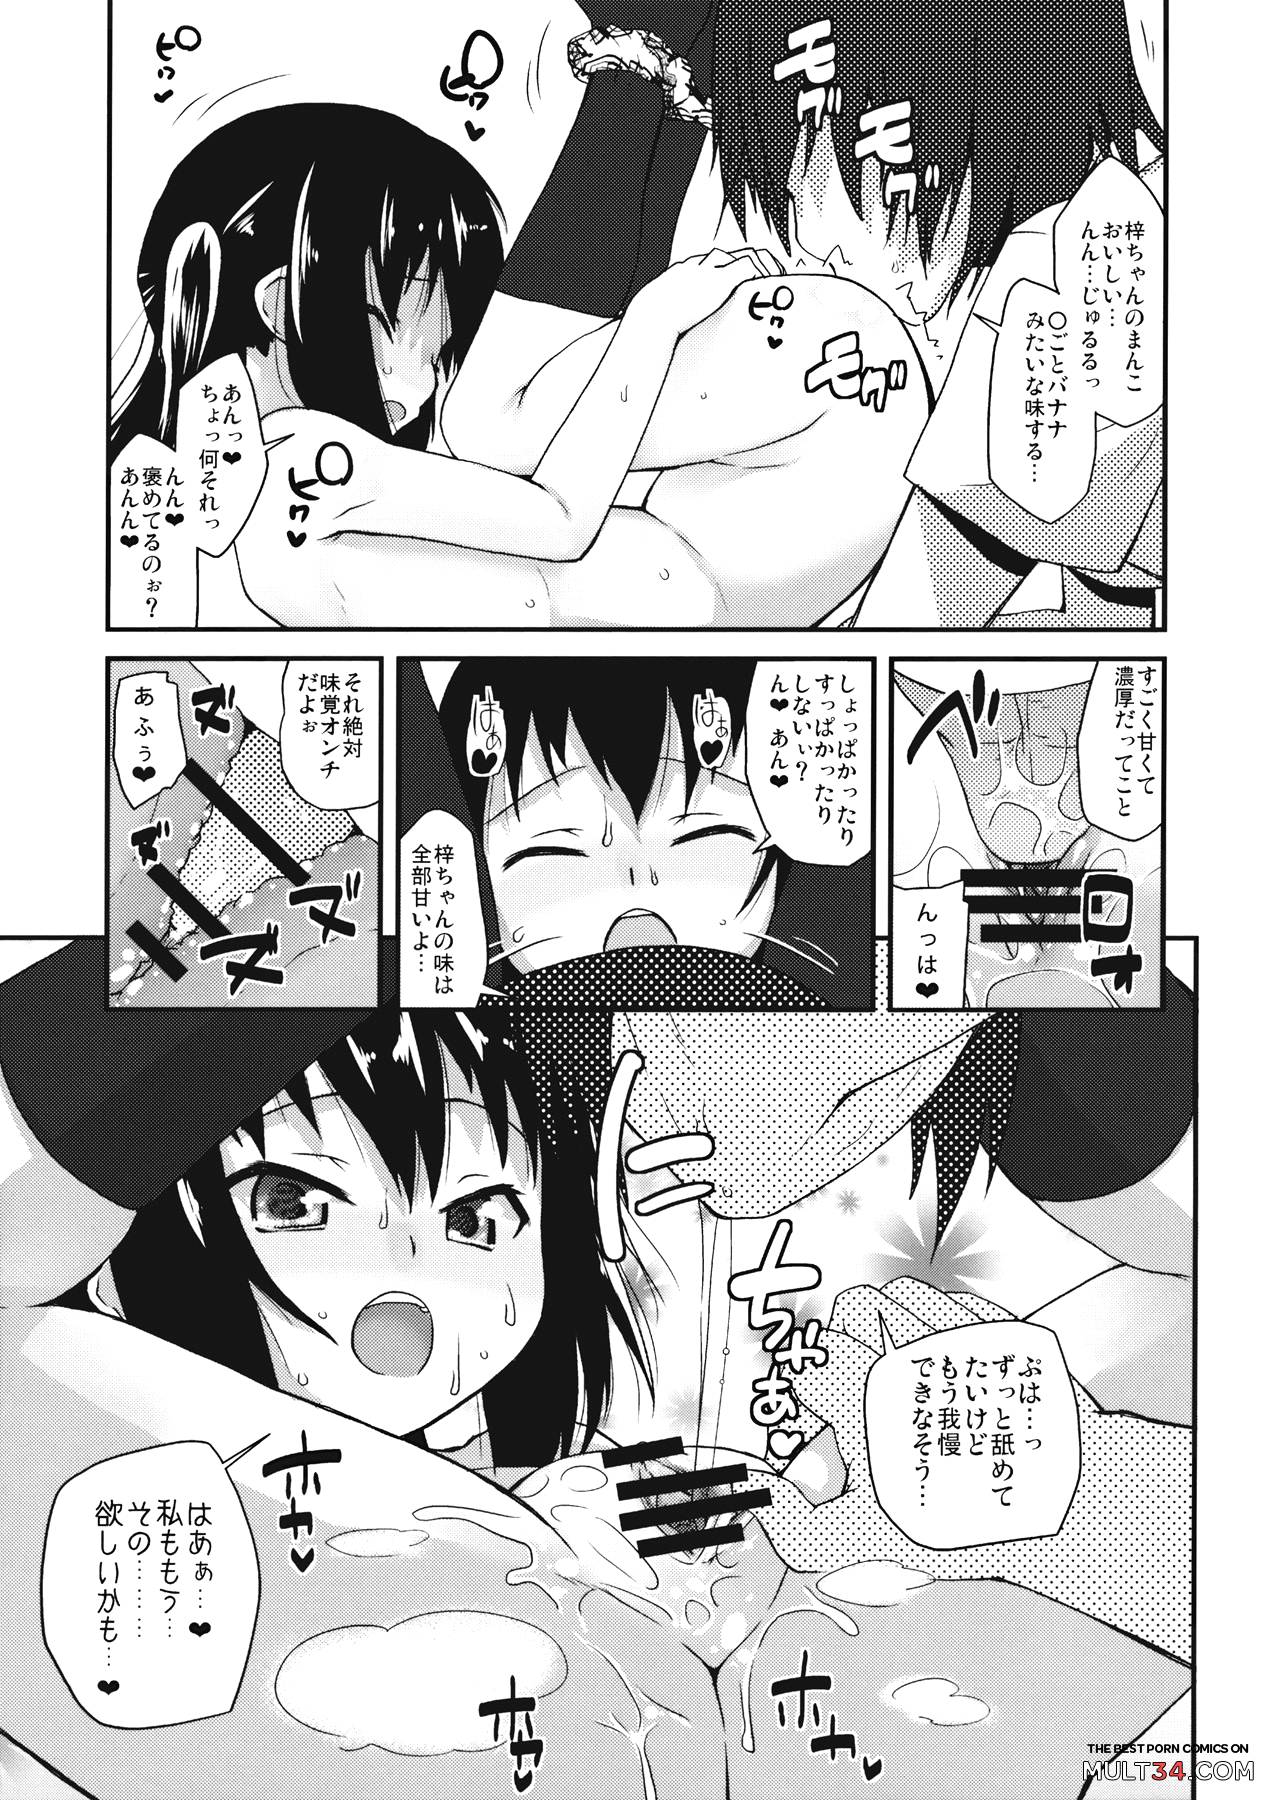 Moshikano!! page 13